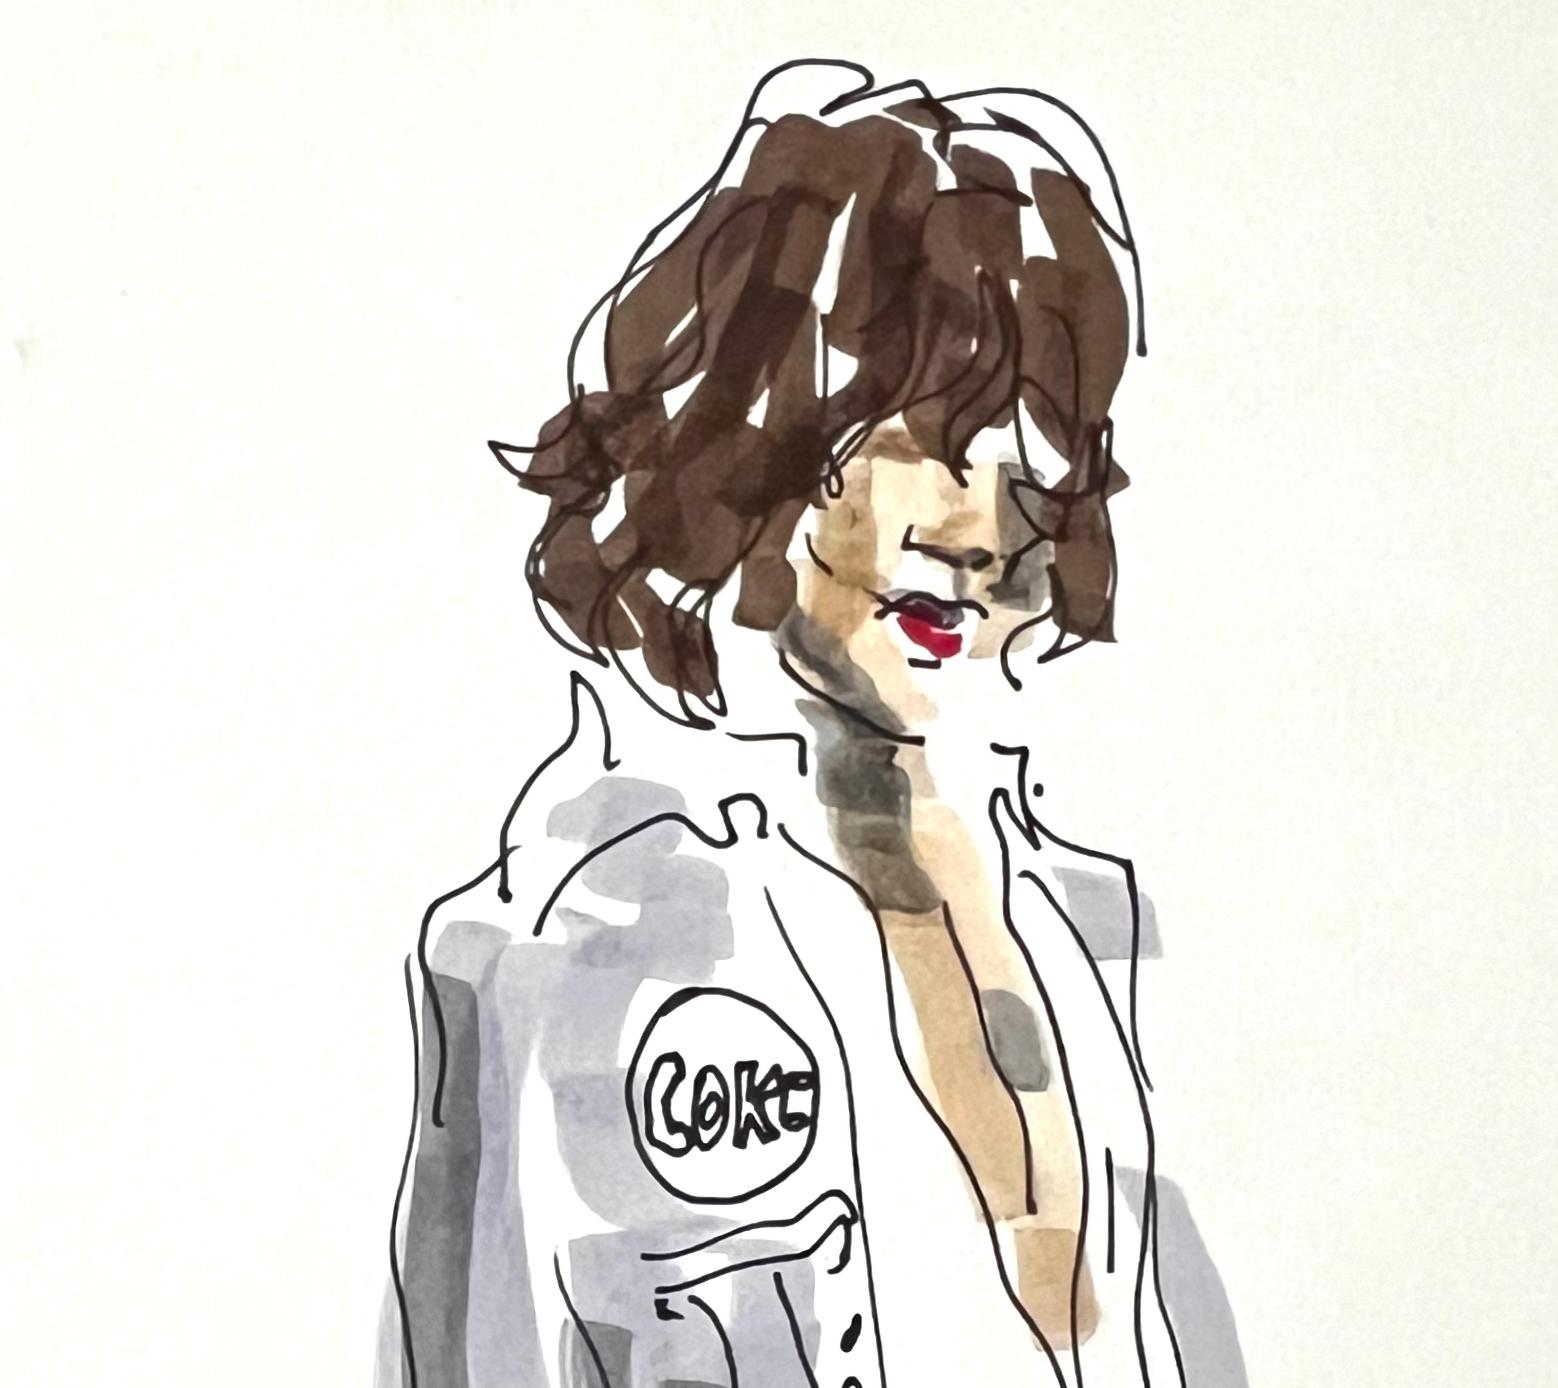 Étude pour Yves Saint Laurent et Mick Jagger. De la série Mode - Contemporain Art par Manuel Santelices